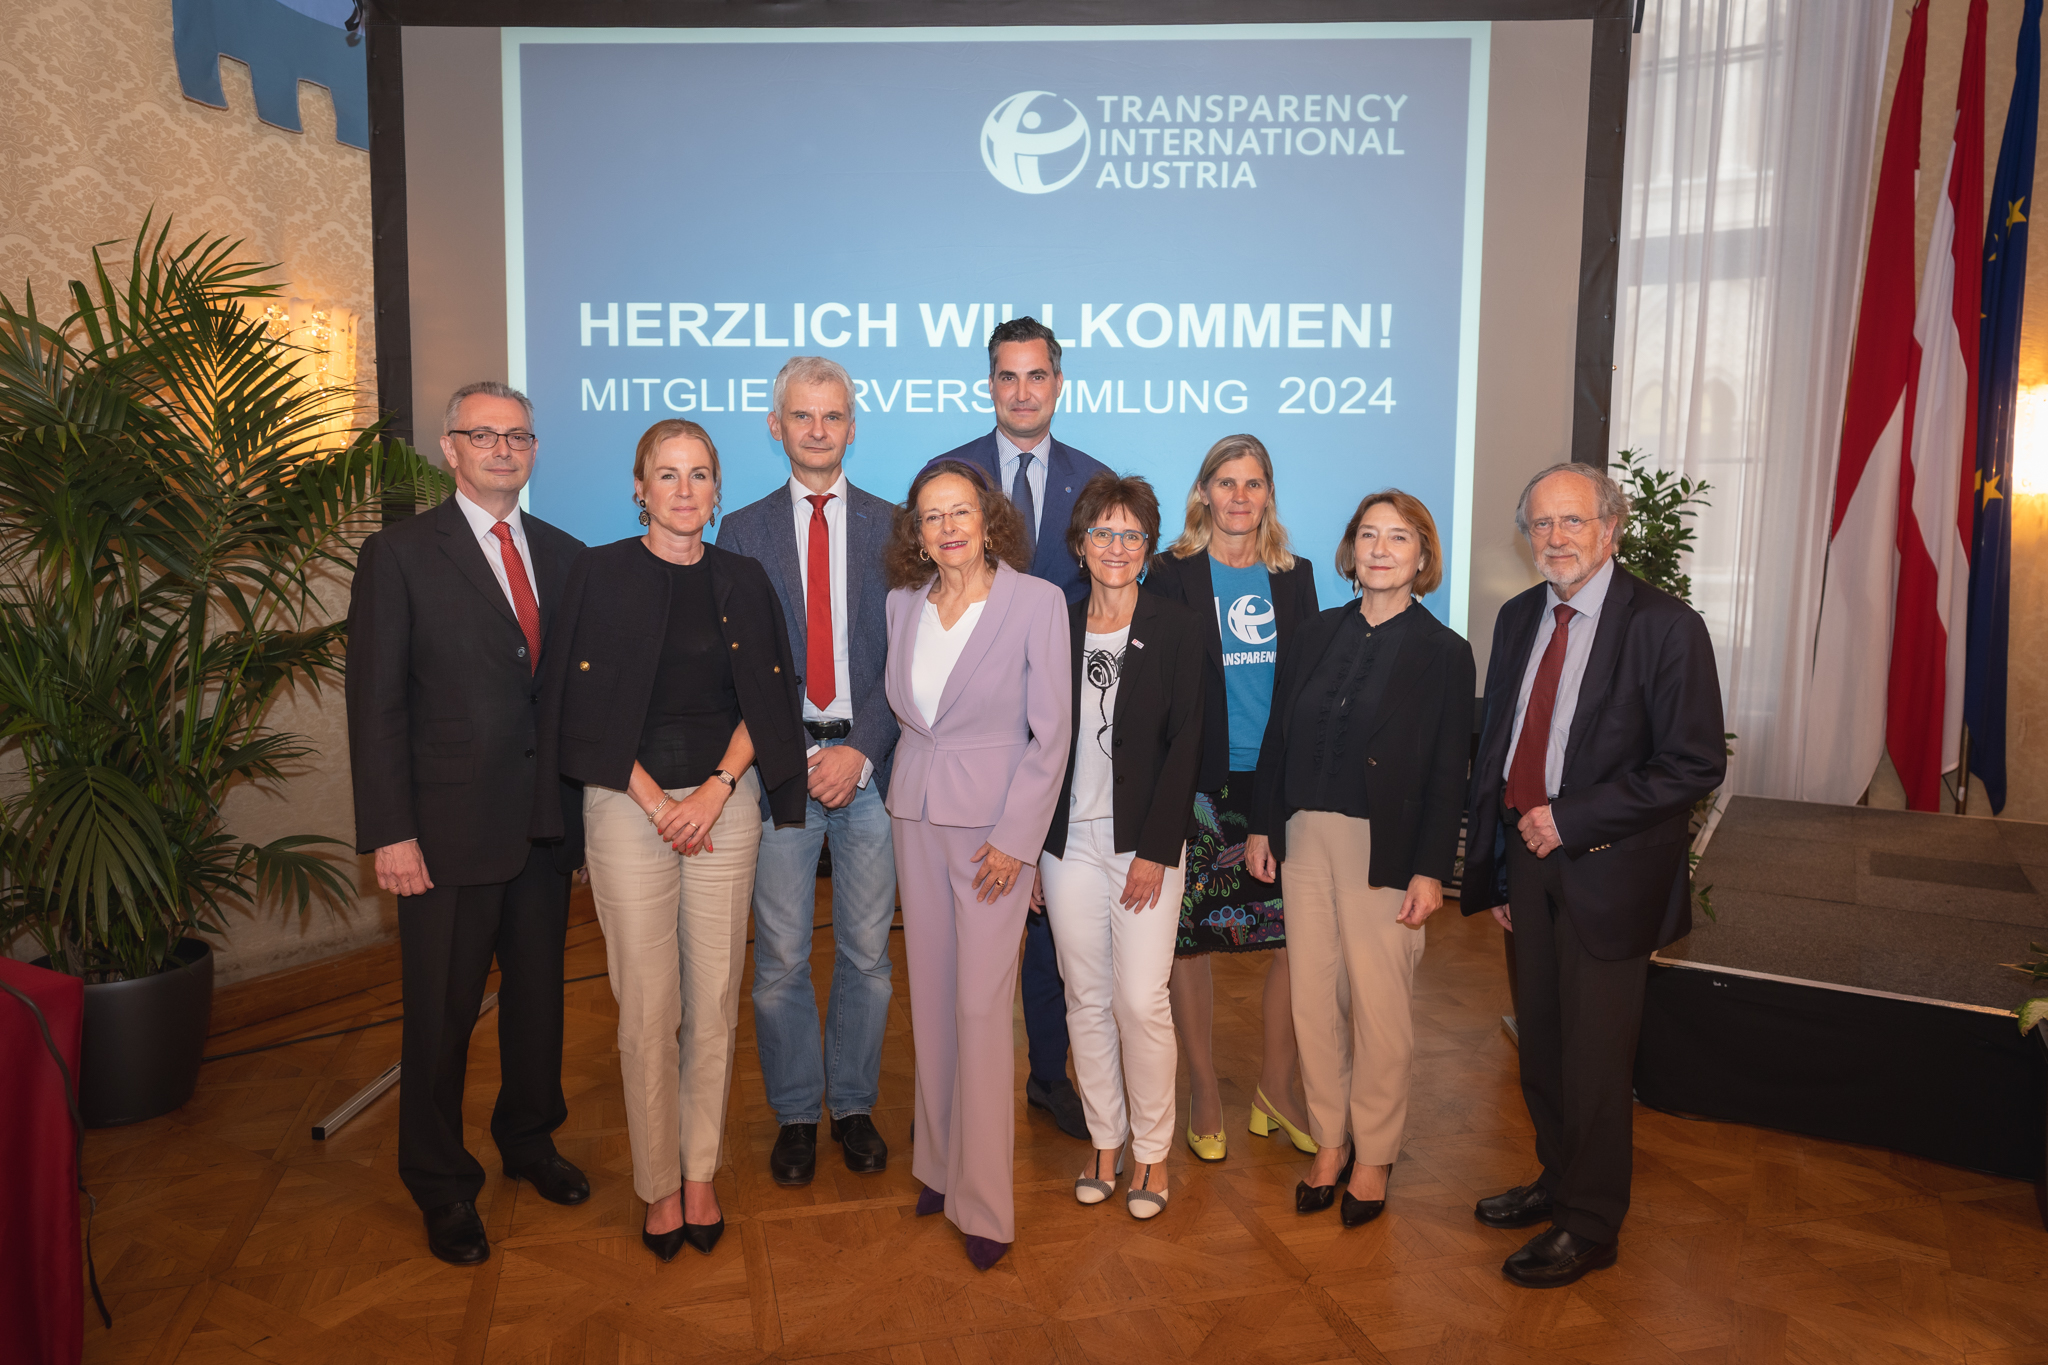 Änderungen im Vorstand von Transparency International Austria